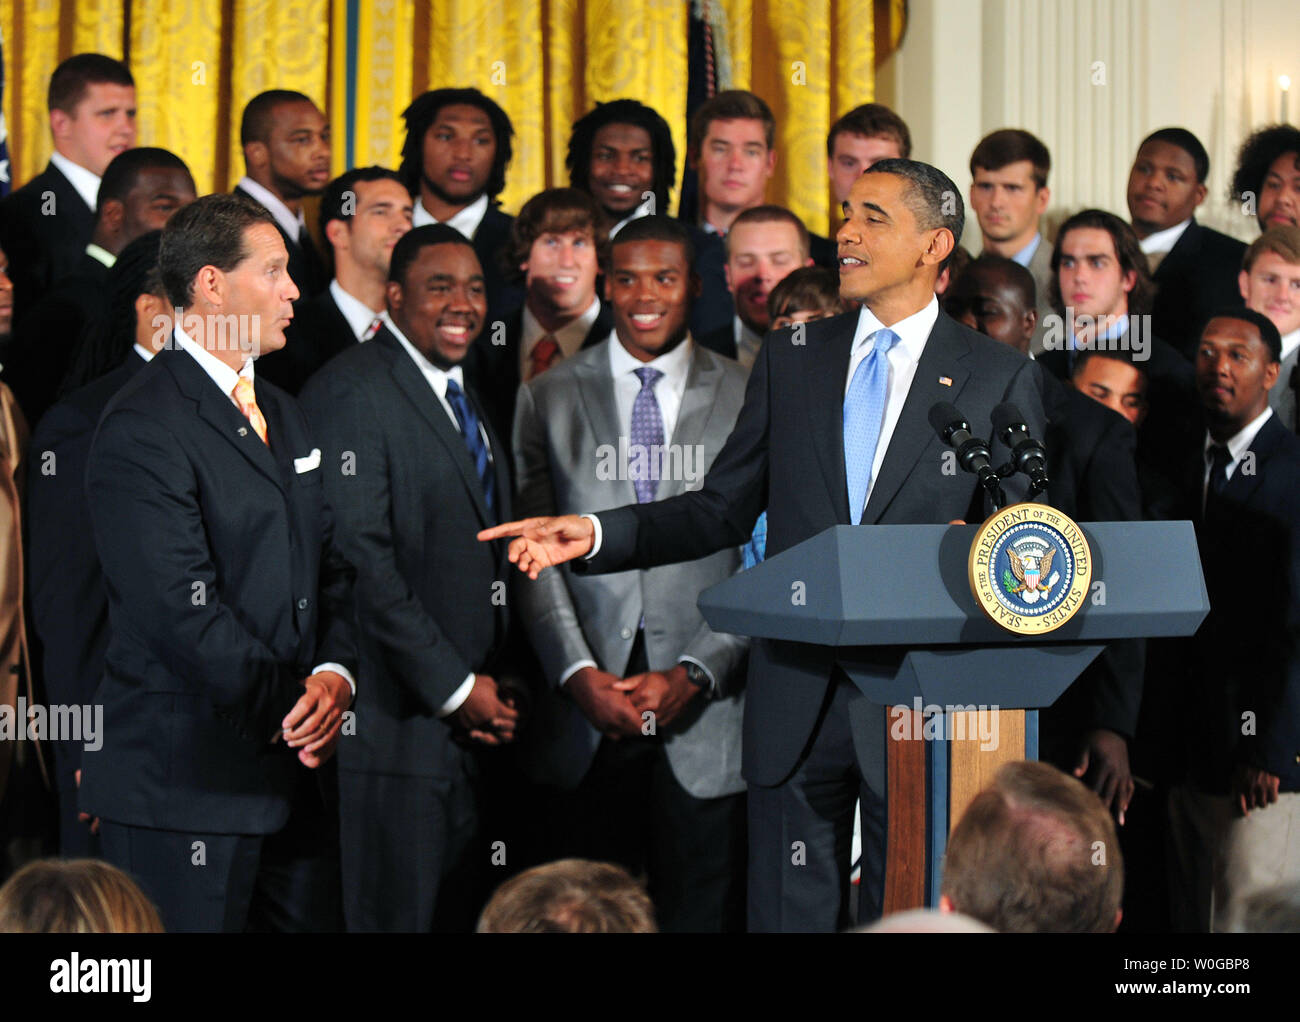 Le président Barack Obama prononce une allocution lors d'une cérémonie en l'honneur du Champion NCAA 2010 Auburn Tigers dans l'Est à la Maison Blanche à Washington le 8 juin 2011. UPI/Kevin Dietsch Banque D'Images